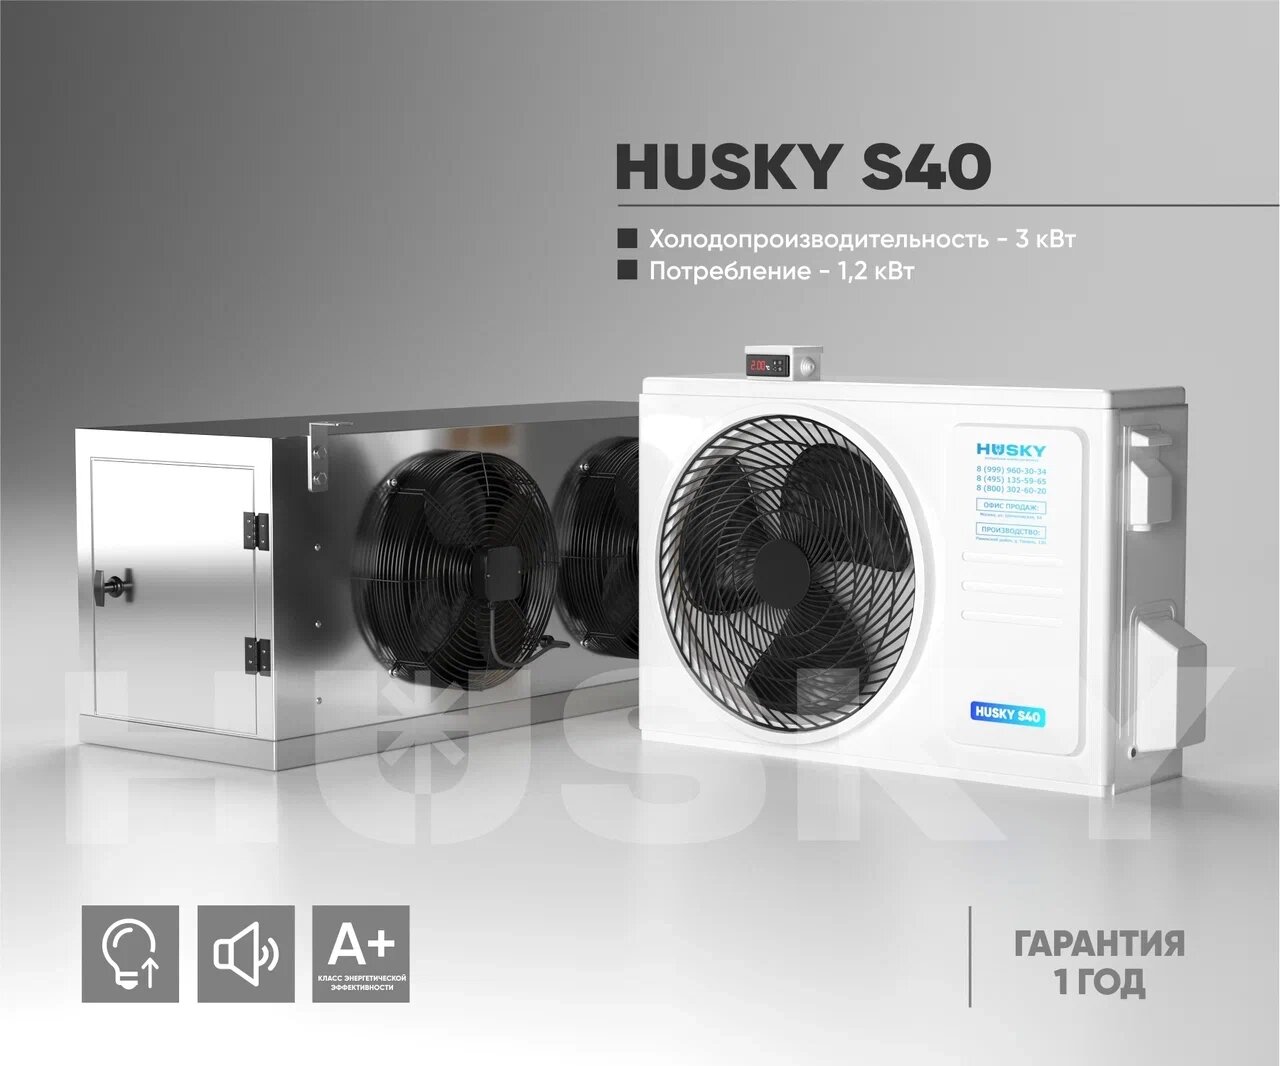 Холодильная установка HUSKY S40